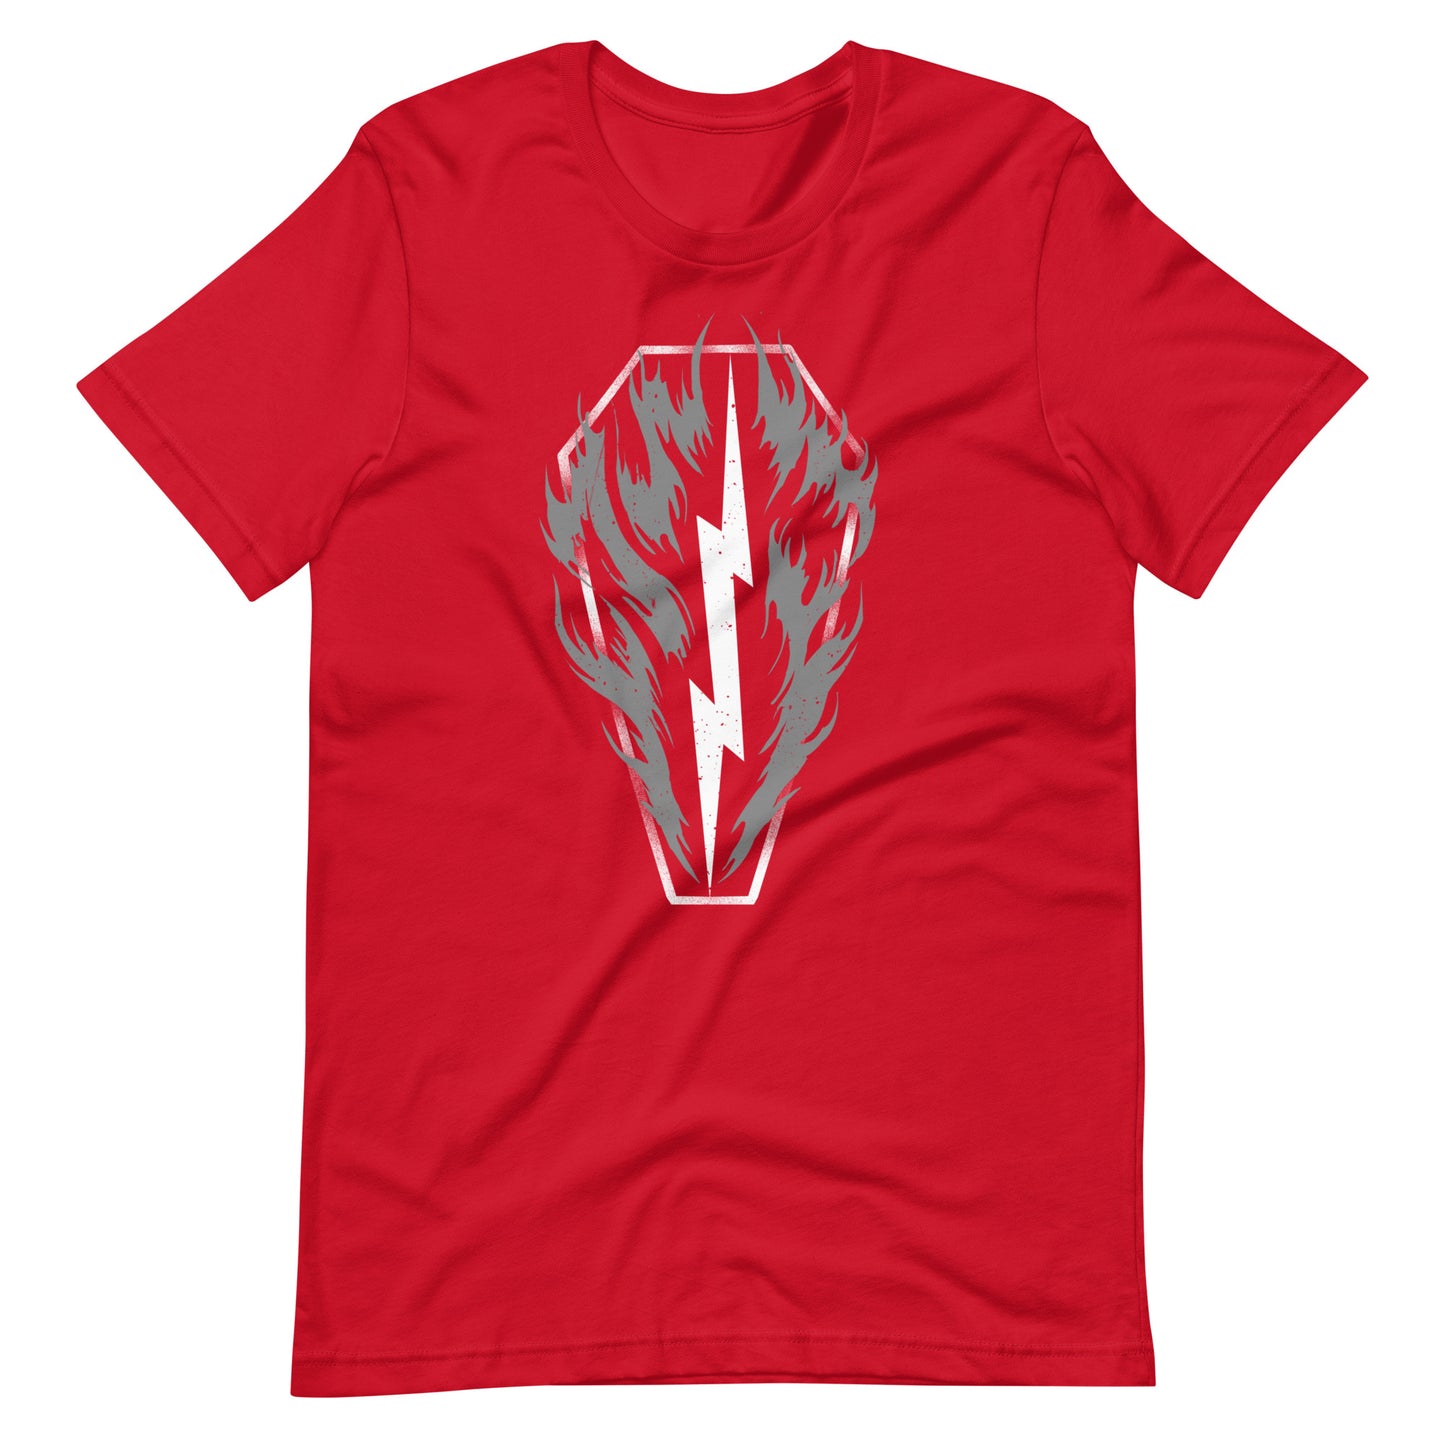 Thunder - Men's t-shirt - Red Front